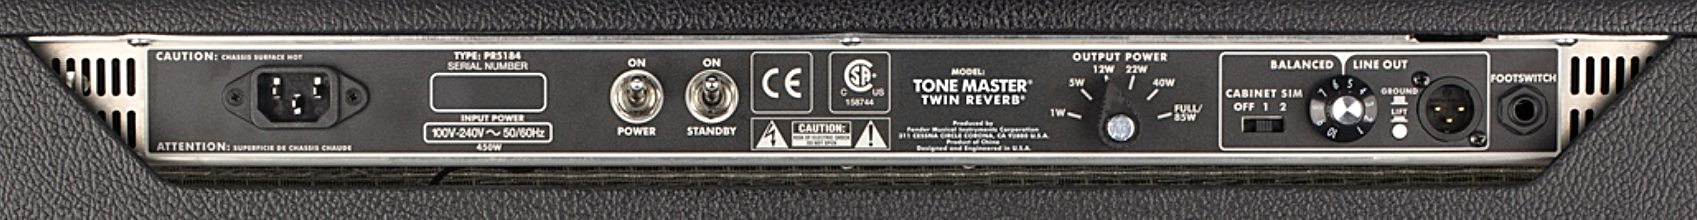 Fender Tone Master Twin Reverb 200w 2x12 - Ampli Guitare Électrique Combo - Variation 4